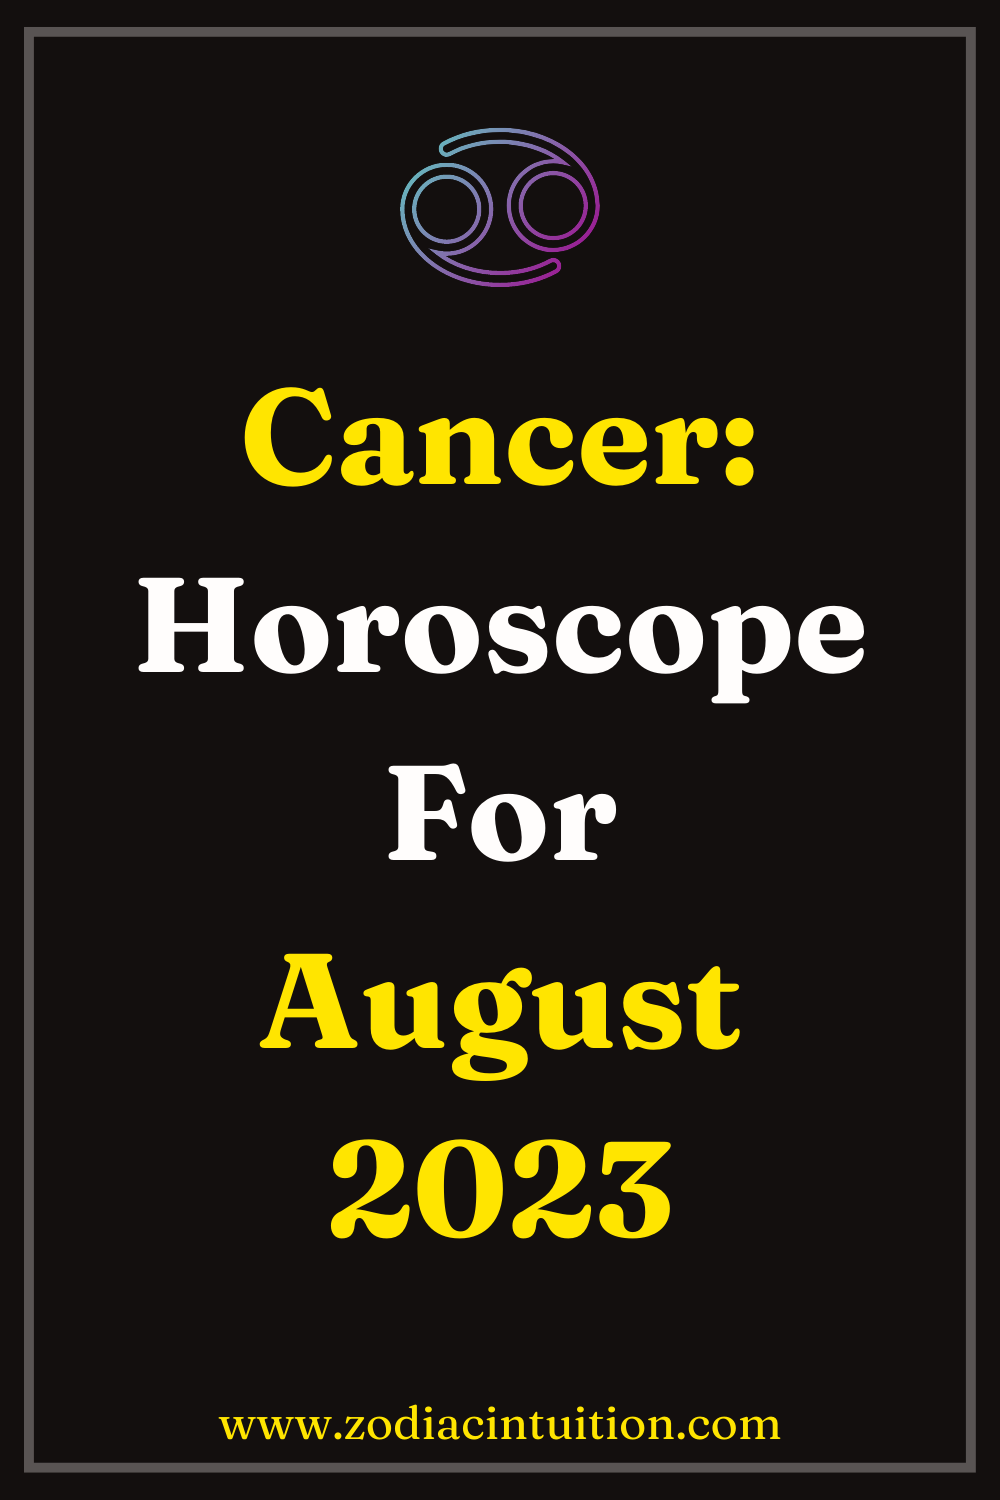 Cancer: Horoscope For August 2023